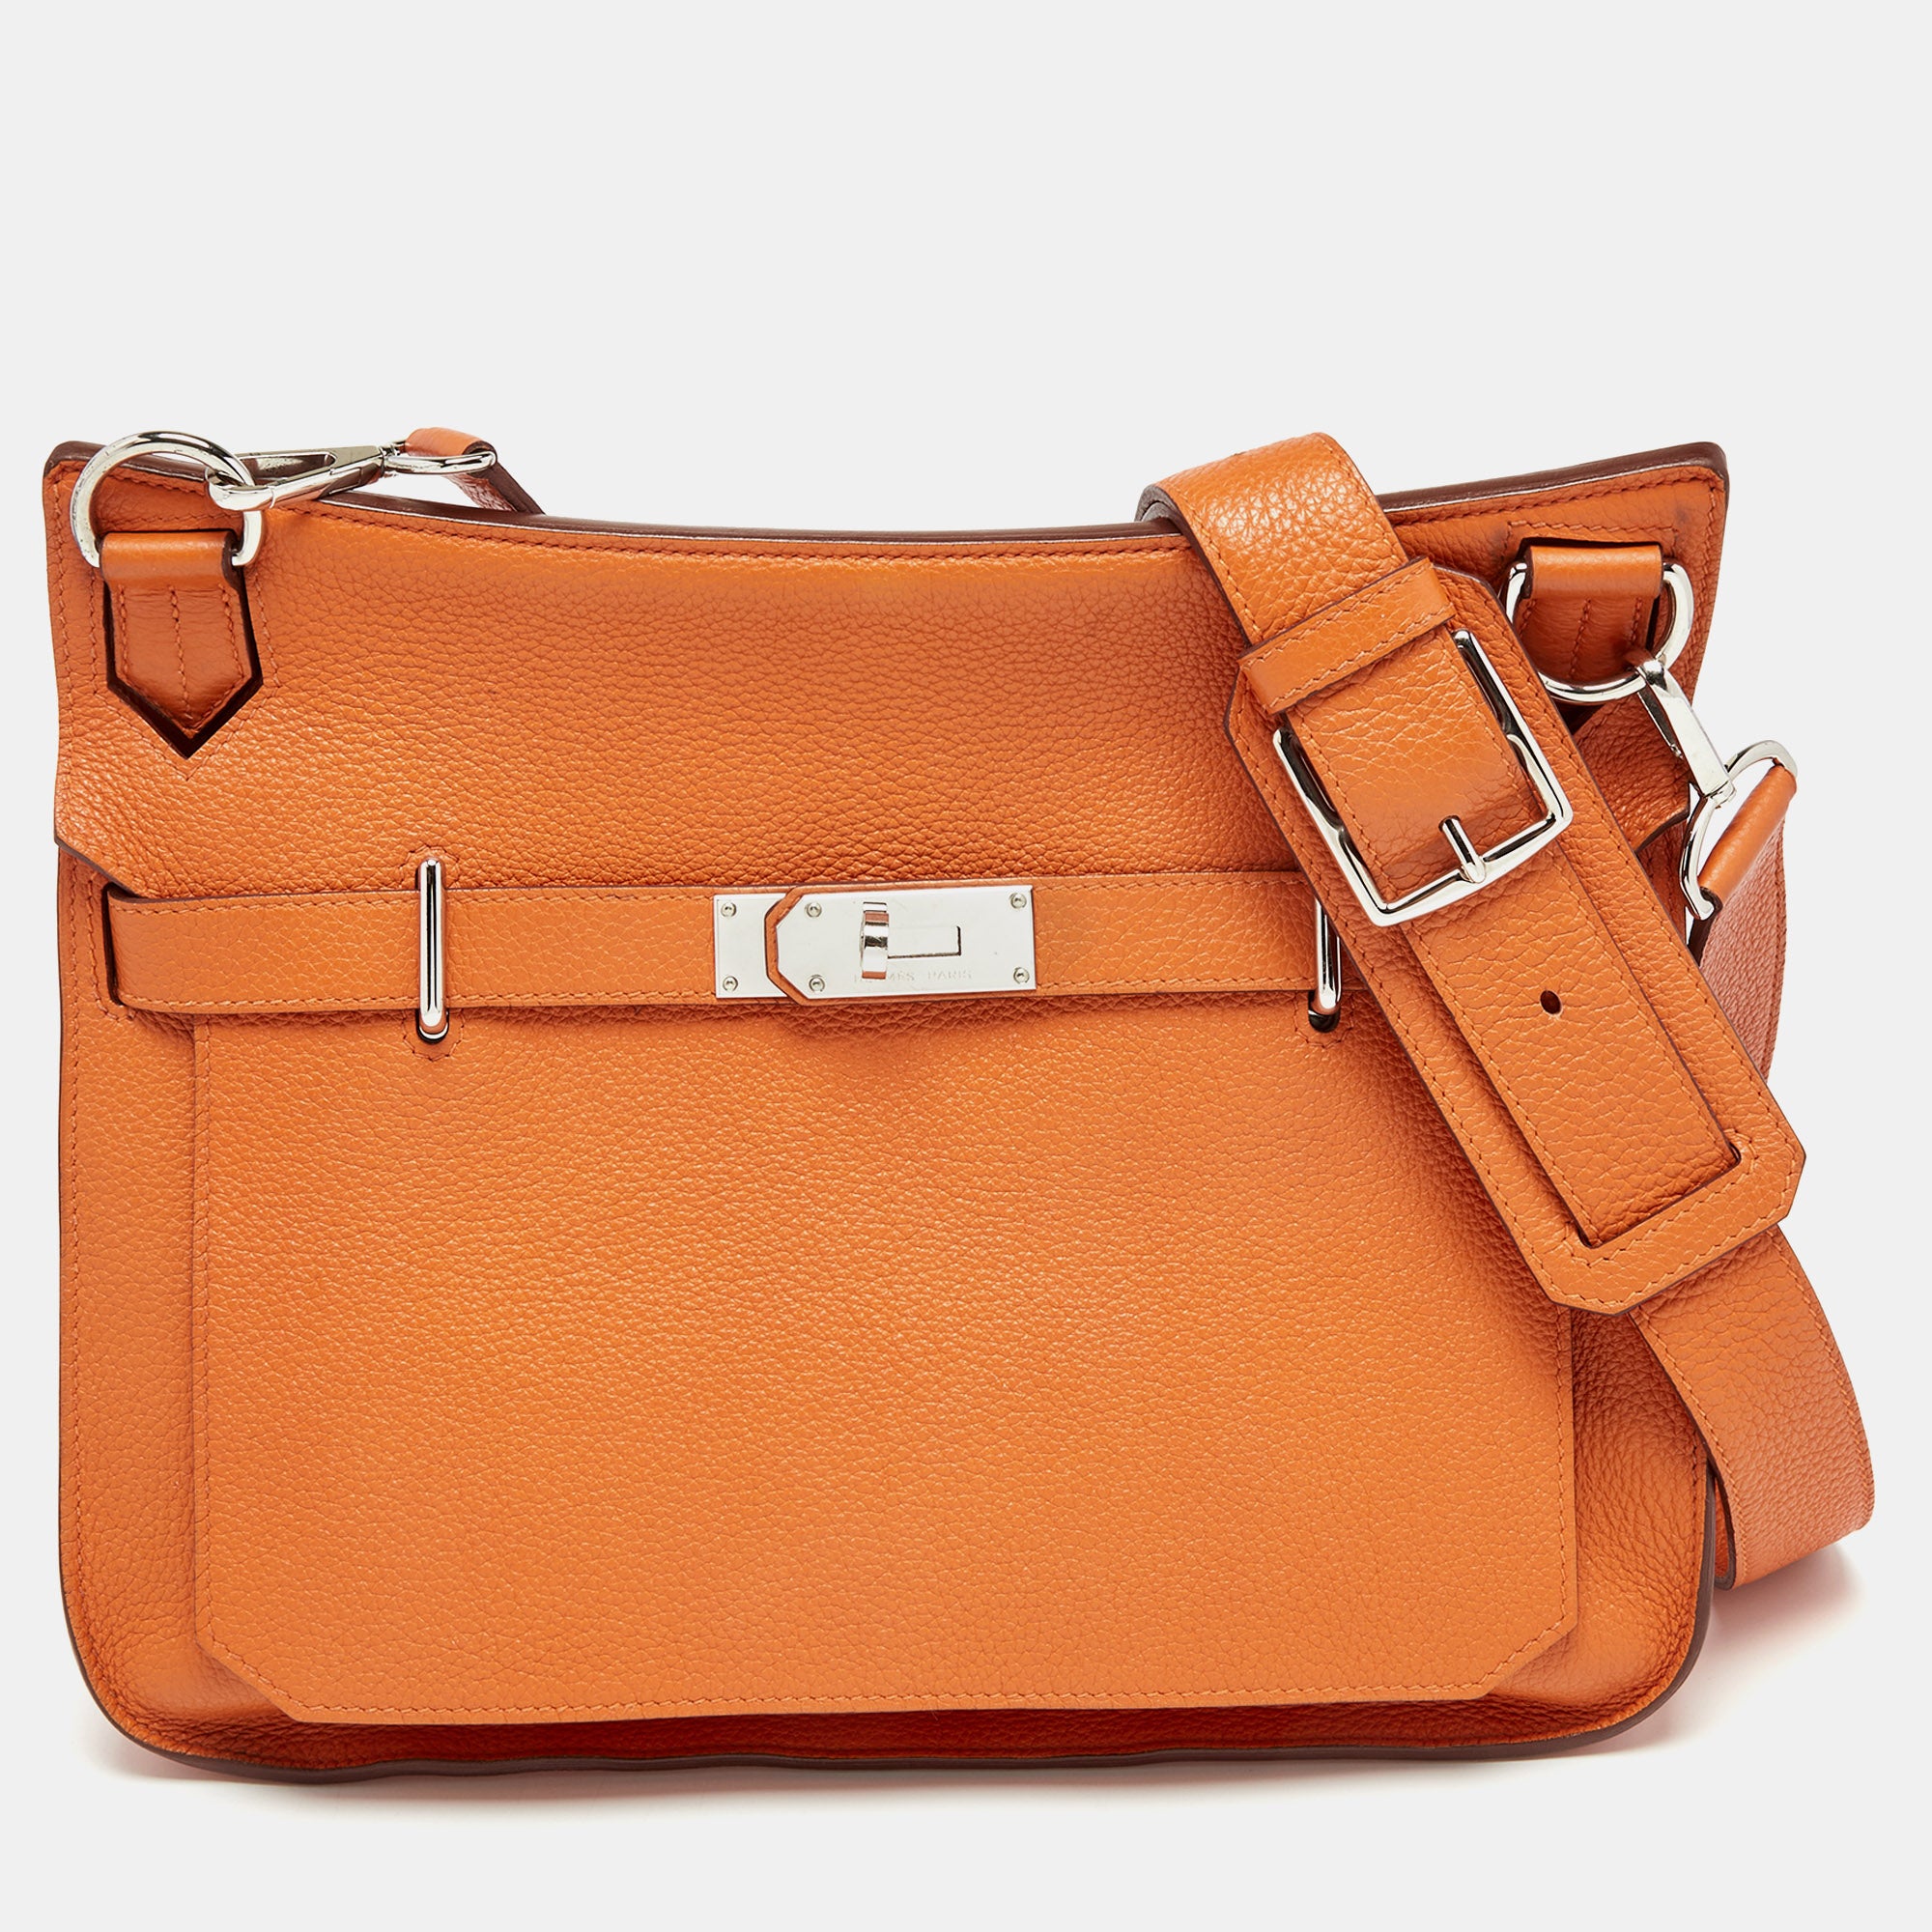 Hermes Orange Togo Leather Palladium Hardware Jypsiere 34 Bag